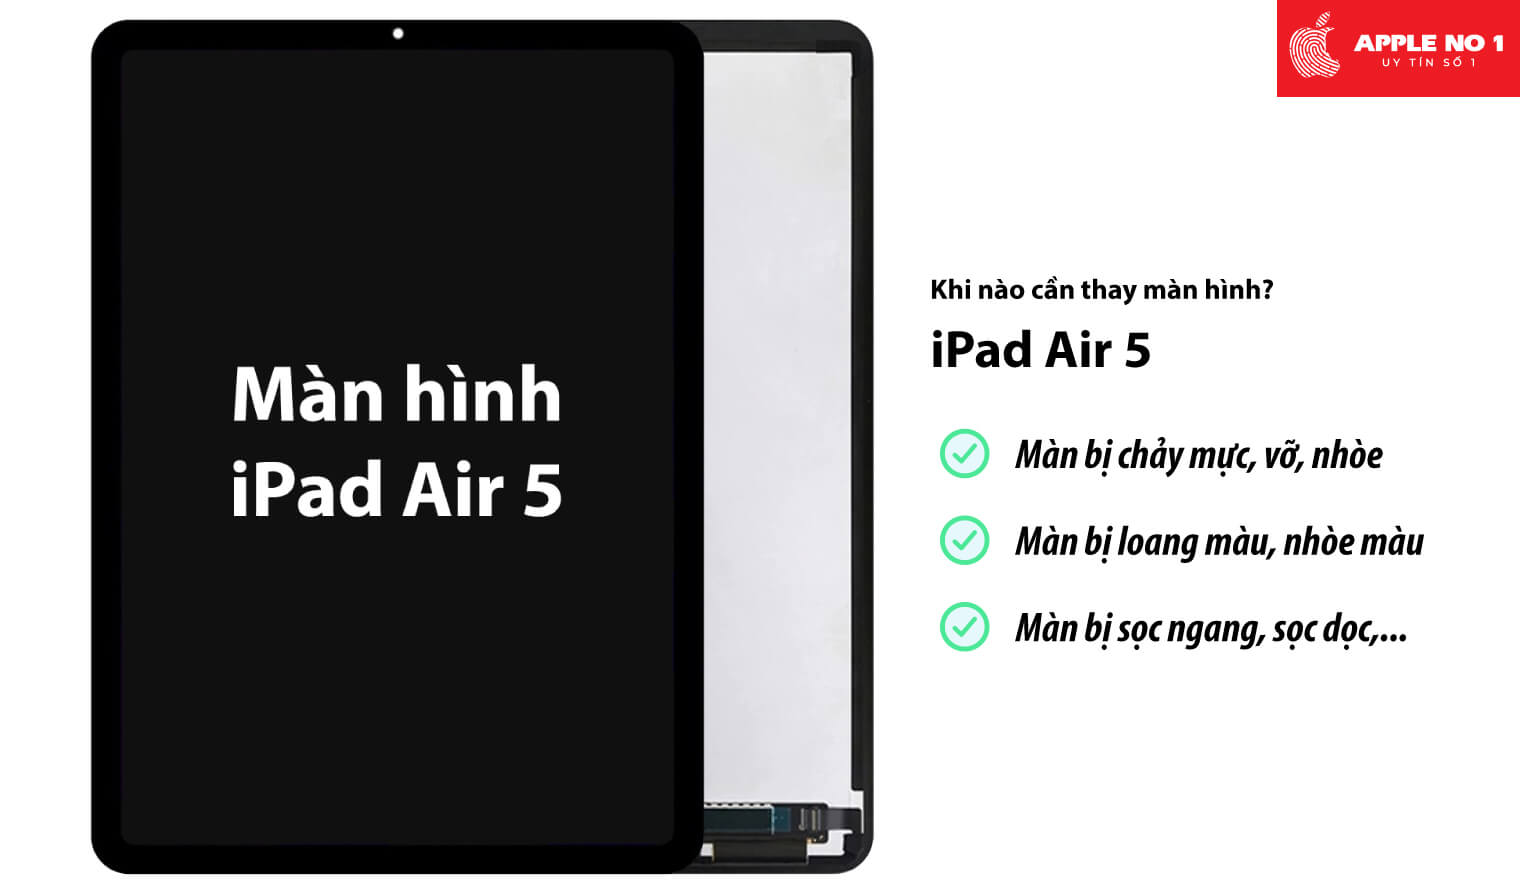 Thay màn hình iPad air 5 khi nào?